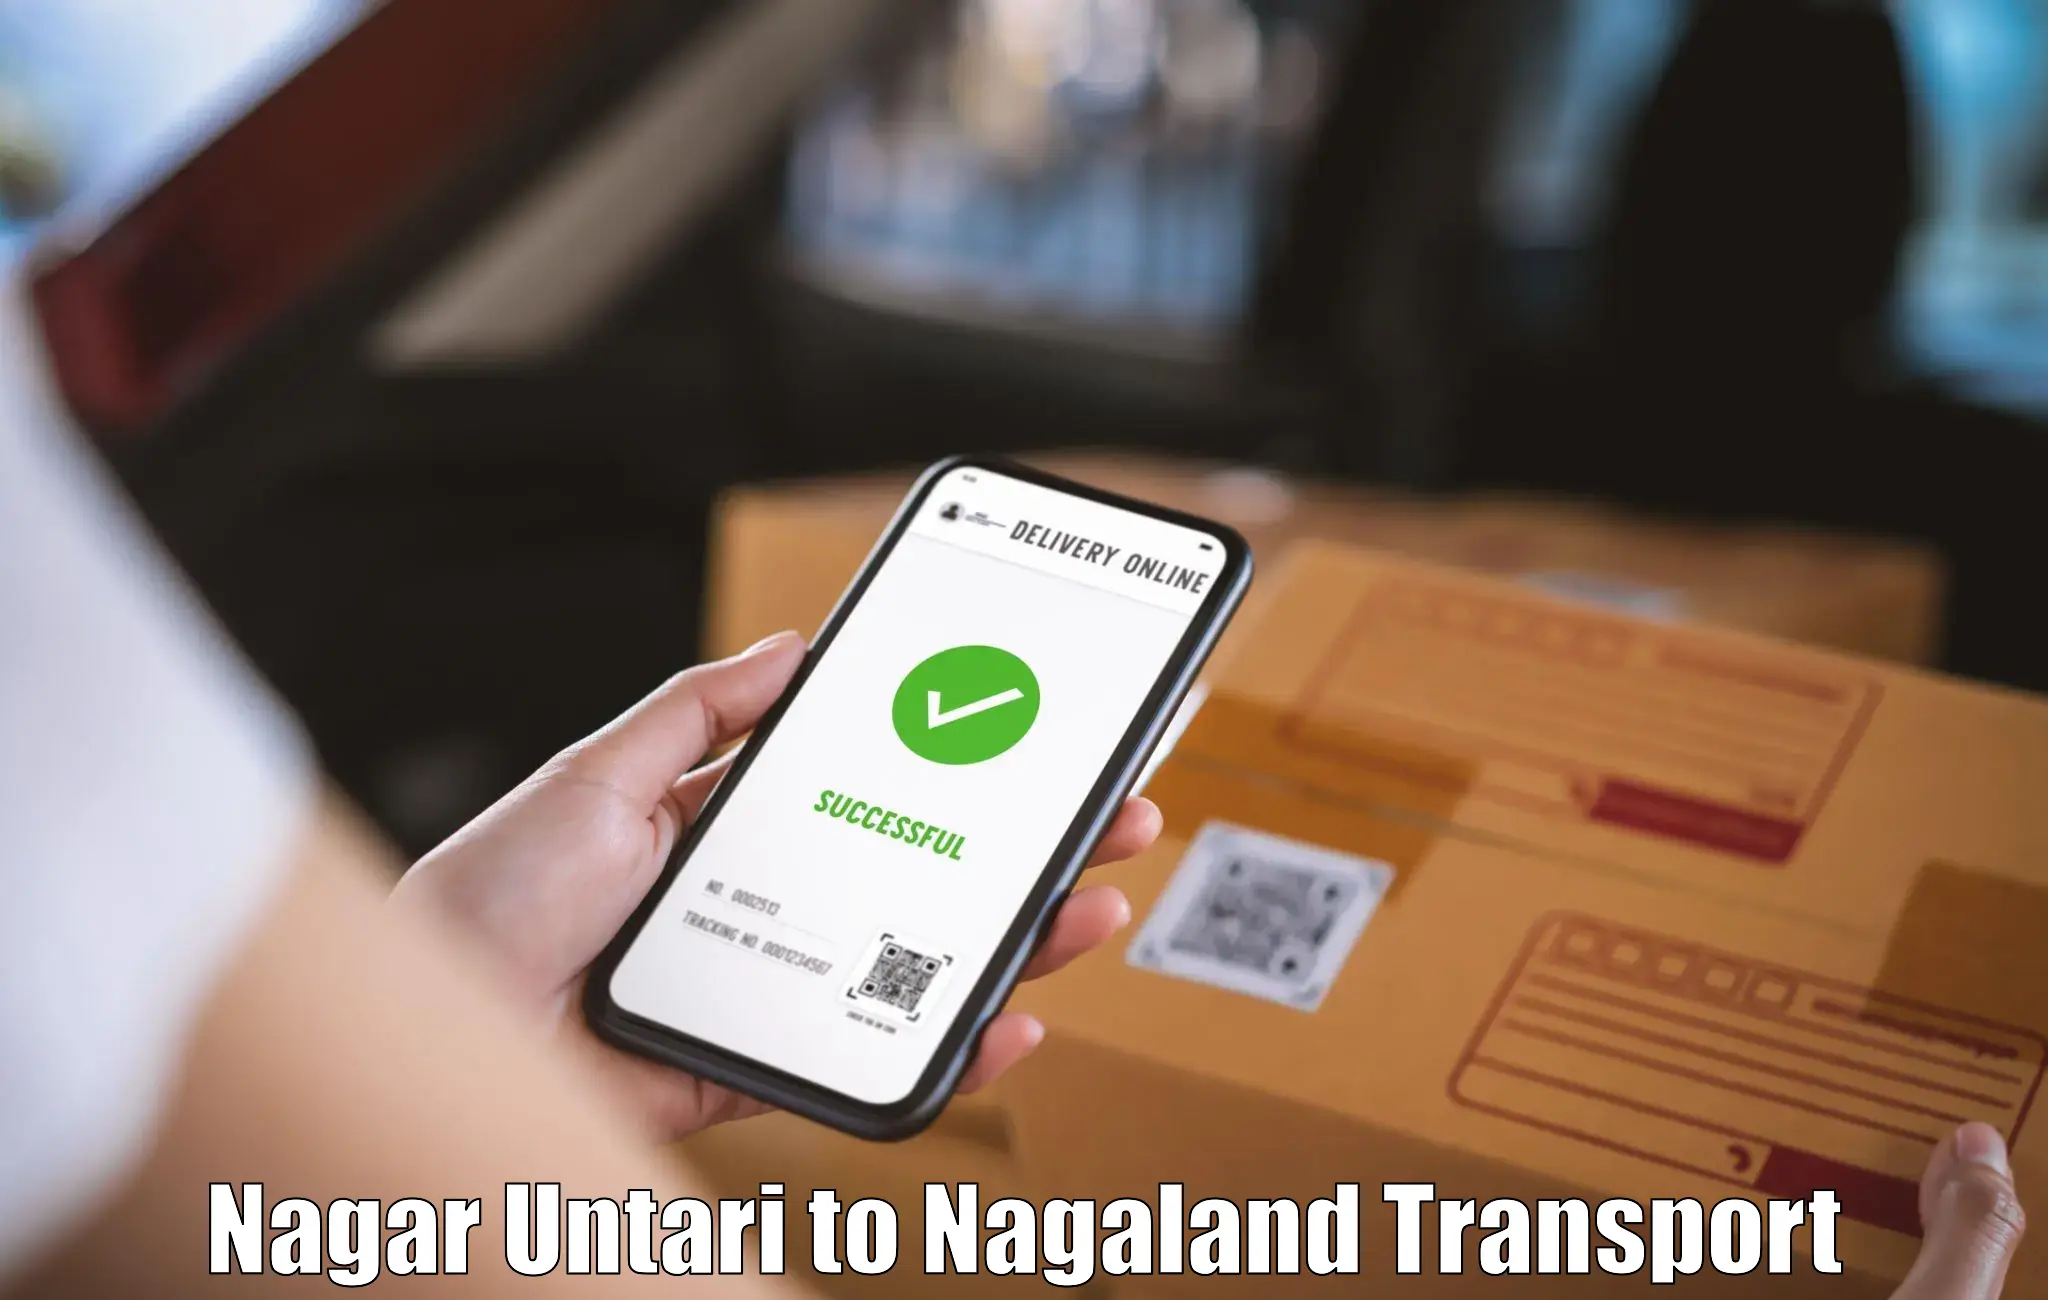 Delivery service Nagar Untari to Kohima